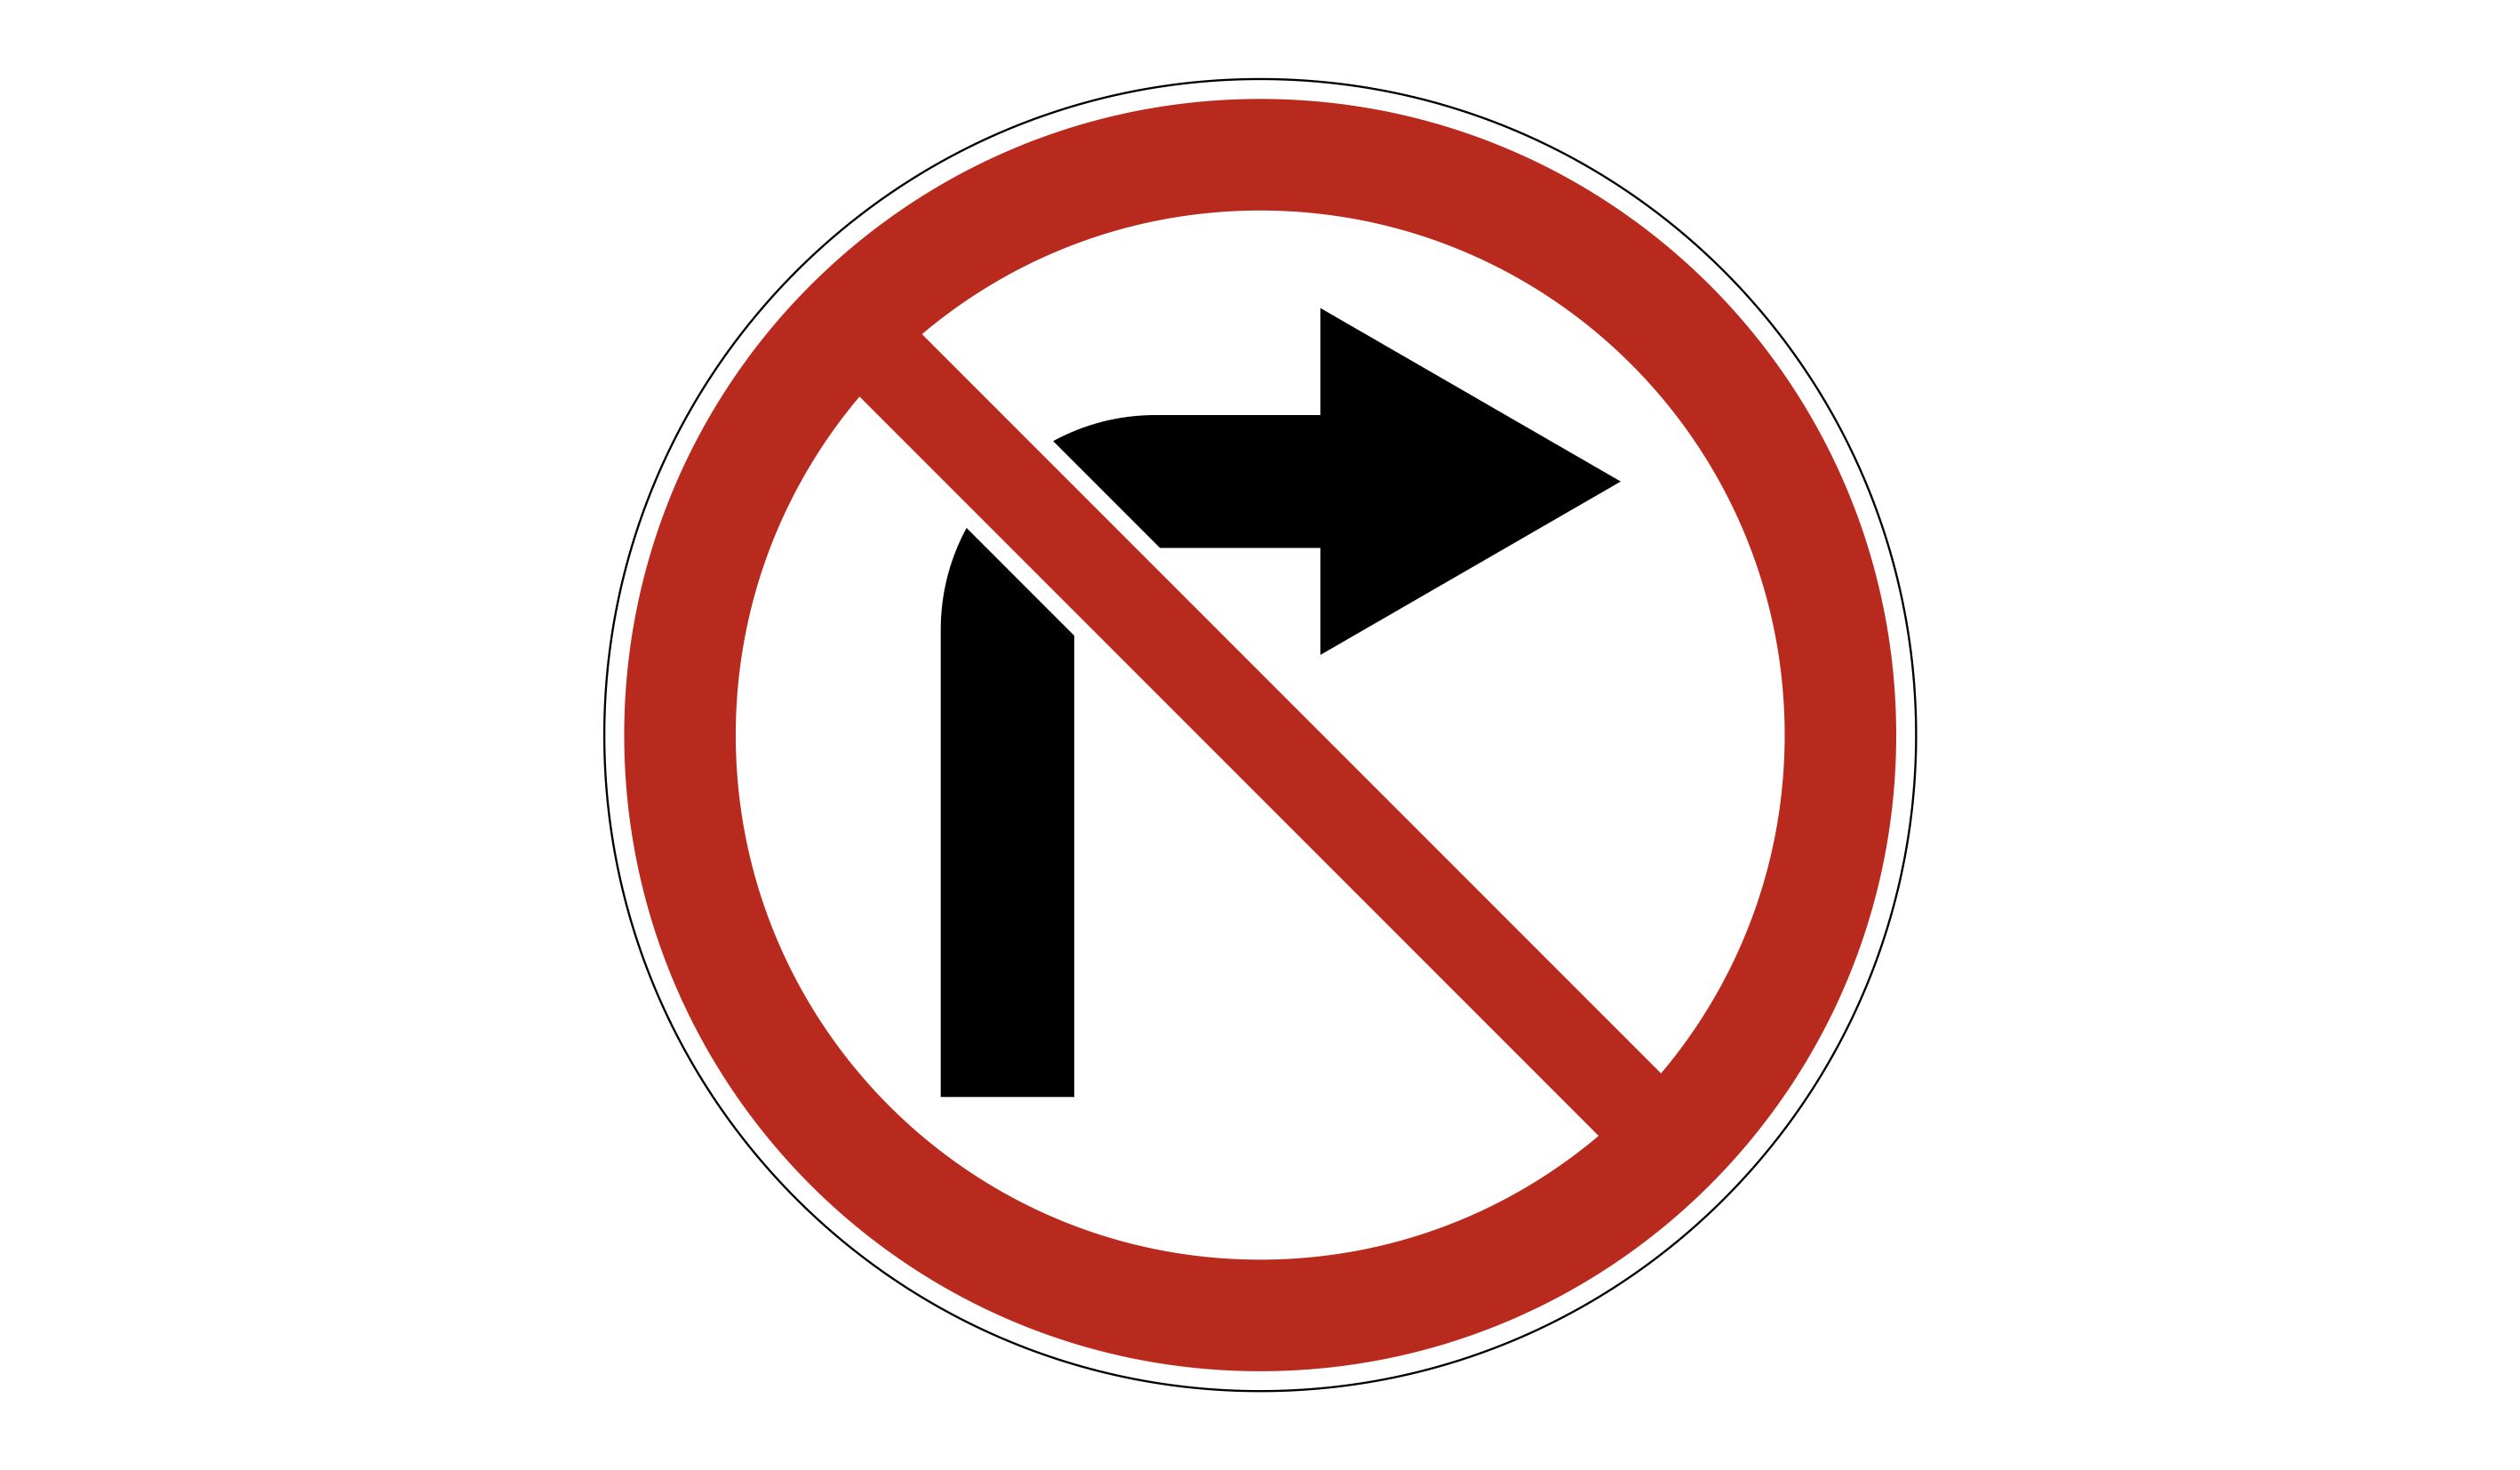 Вправо не ходить. Поворот направо запрещен дорожный знак. 3.18.1 Поворот направо запрещен. Знак 3.18.1. Знак 3.18.2 поворот налево запрещен.